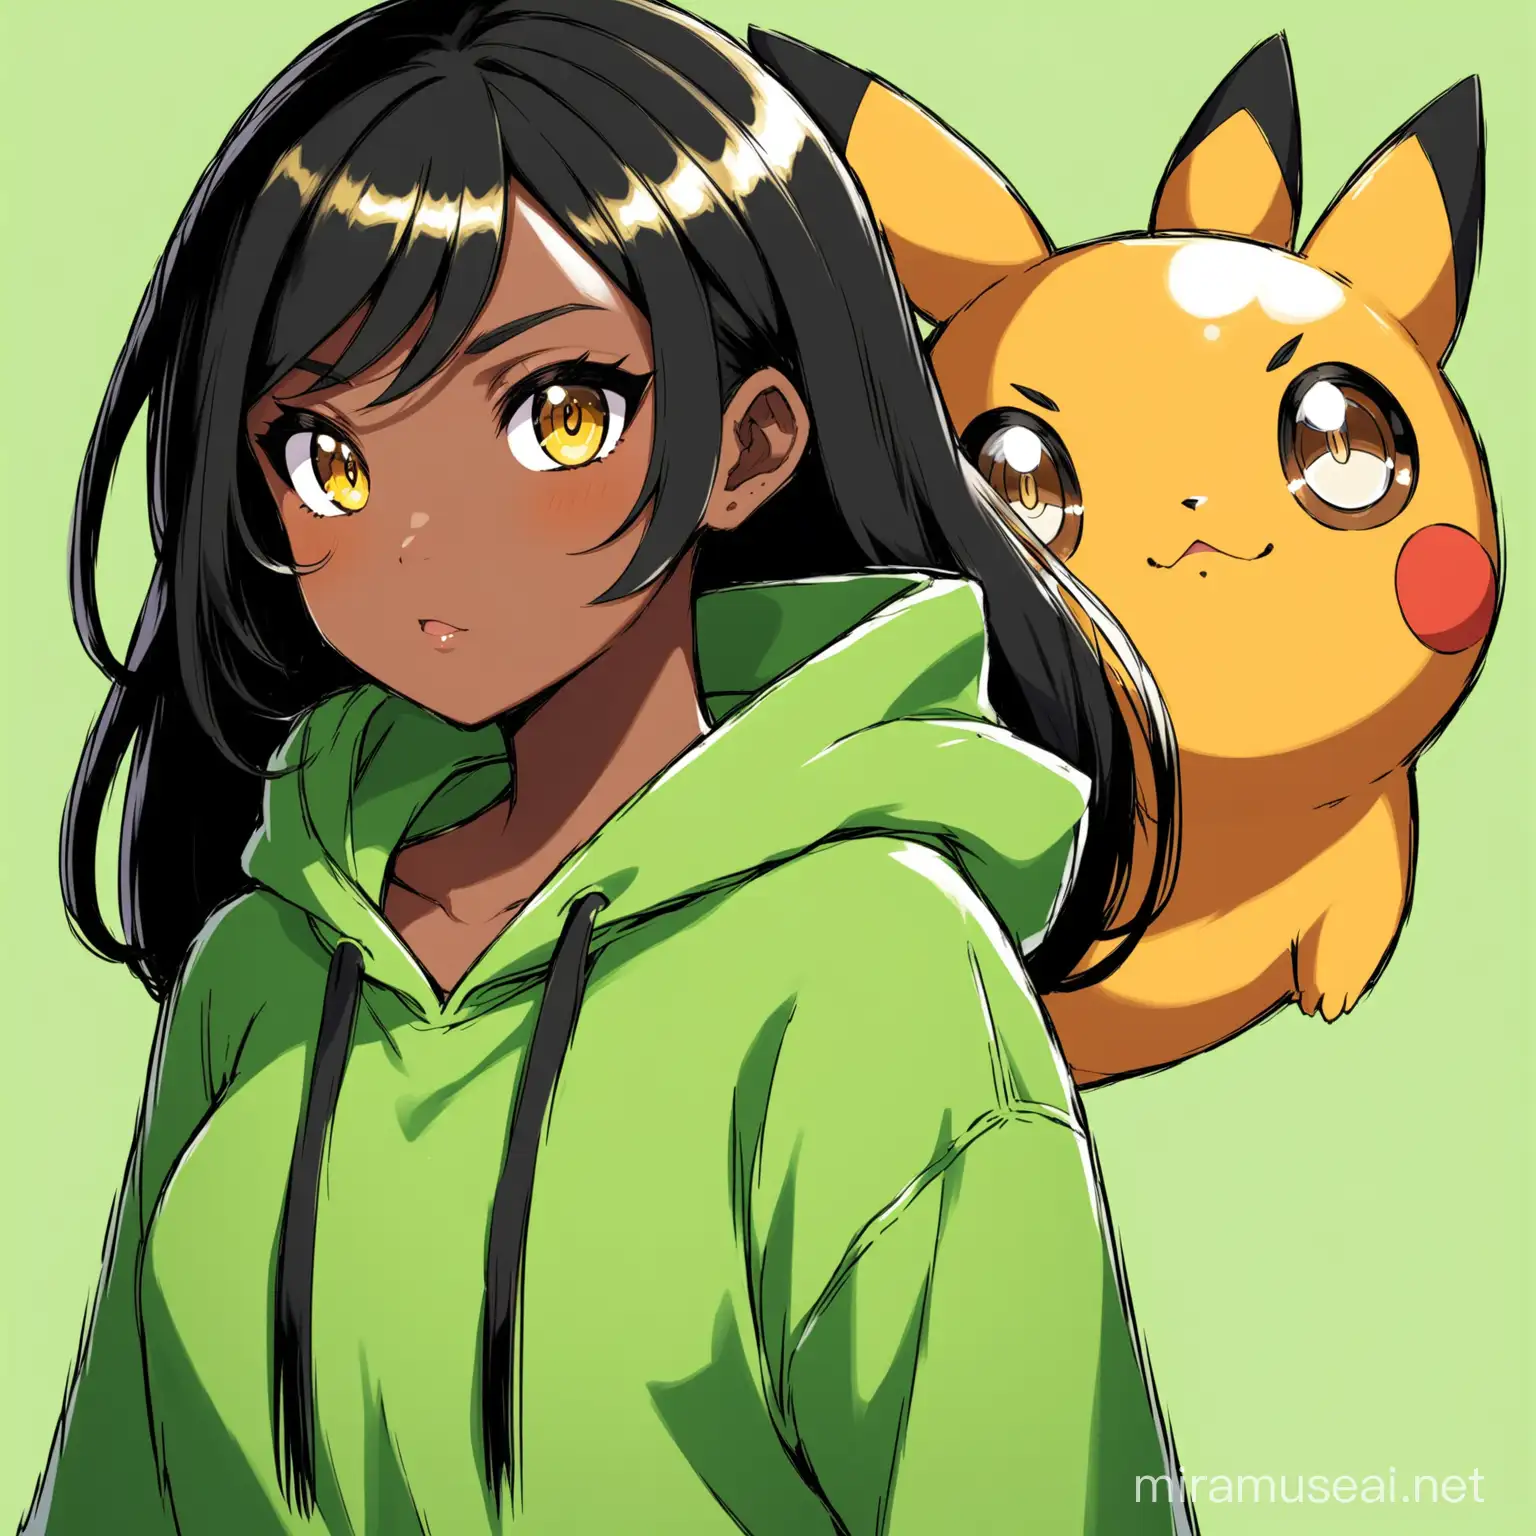 Black skinned girl, black hair, golden eyes, pokemon anime style, green hoodie